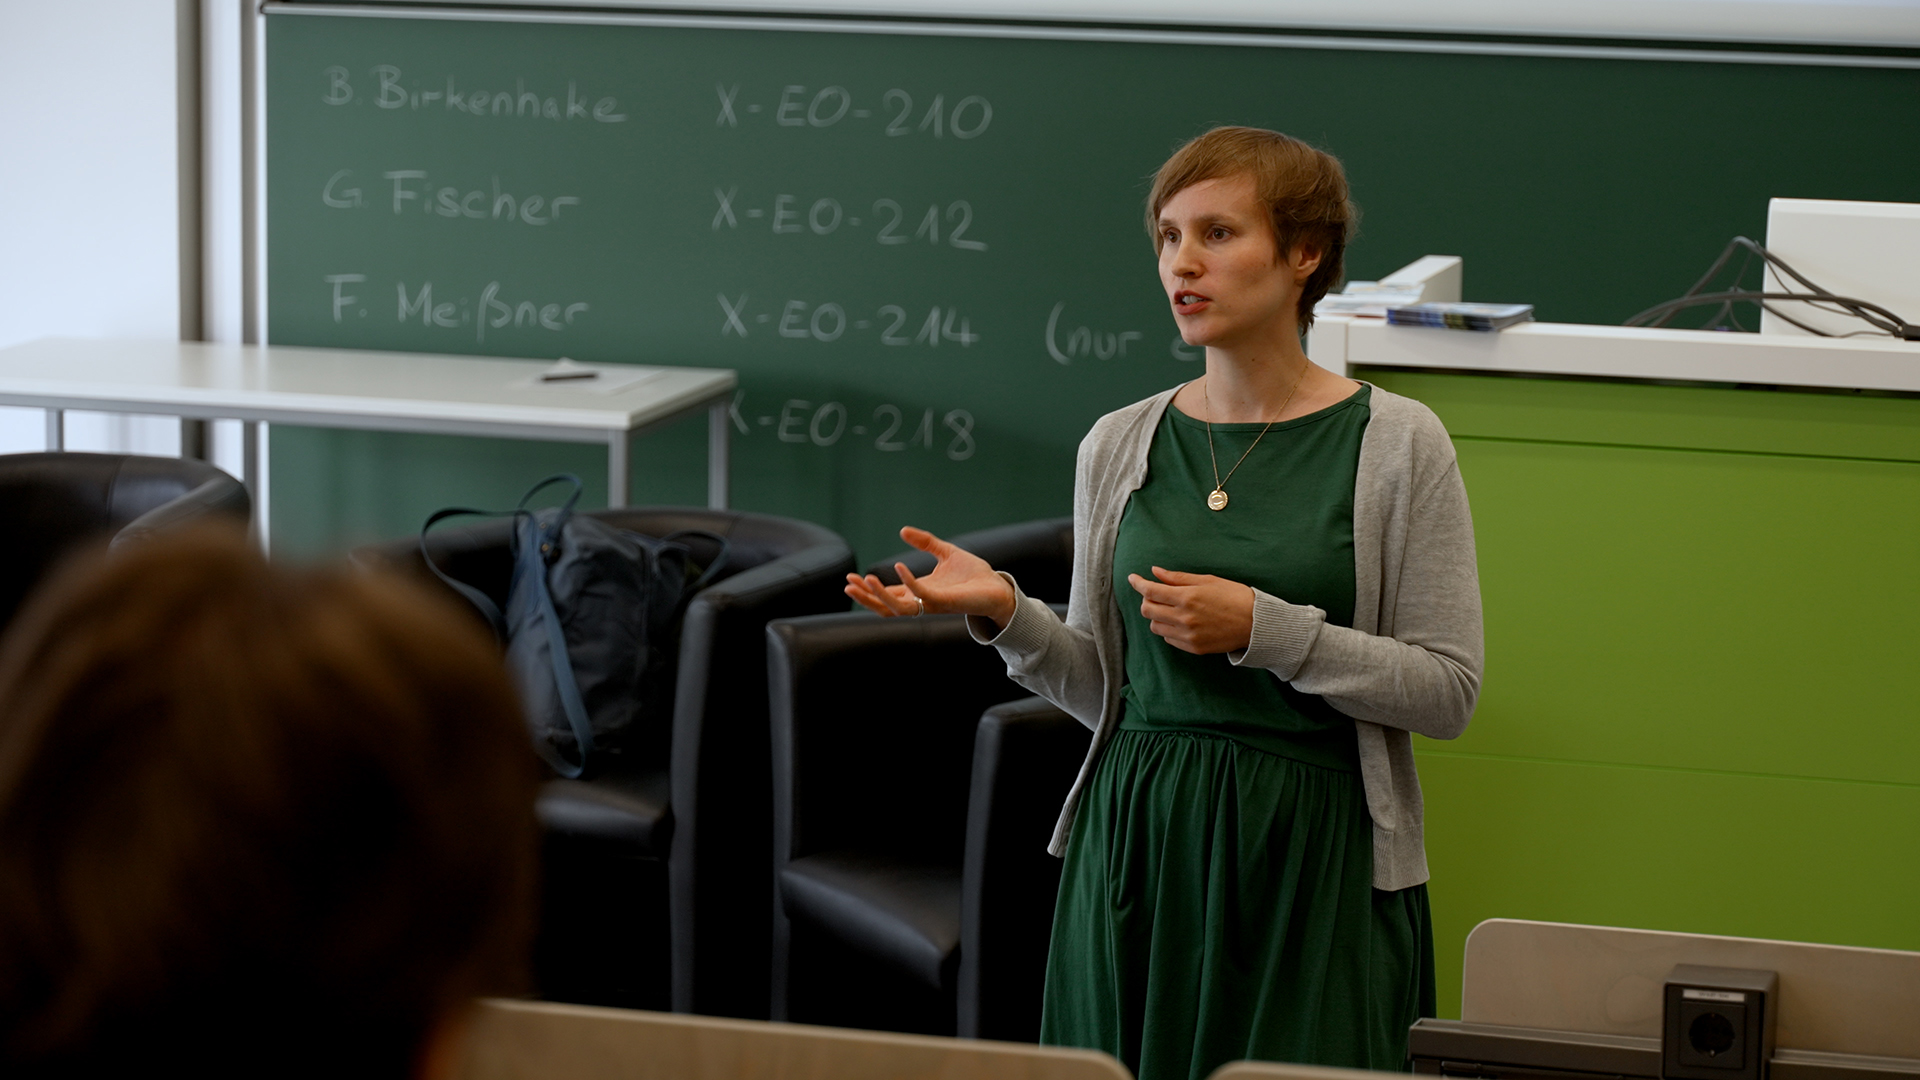 Eine Frau hät einen Vortrag vor Studierenden, Perspektive aus Sicht von Studierenden, Foto: Universität Bielefeld